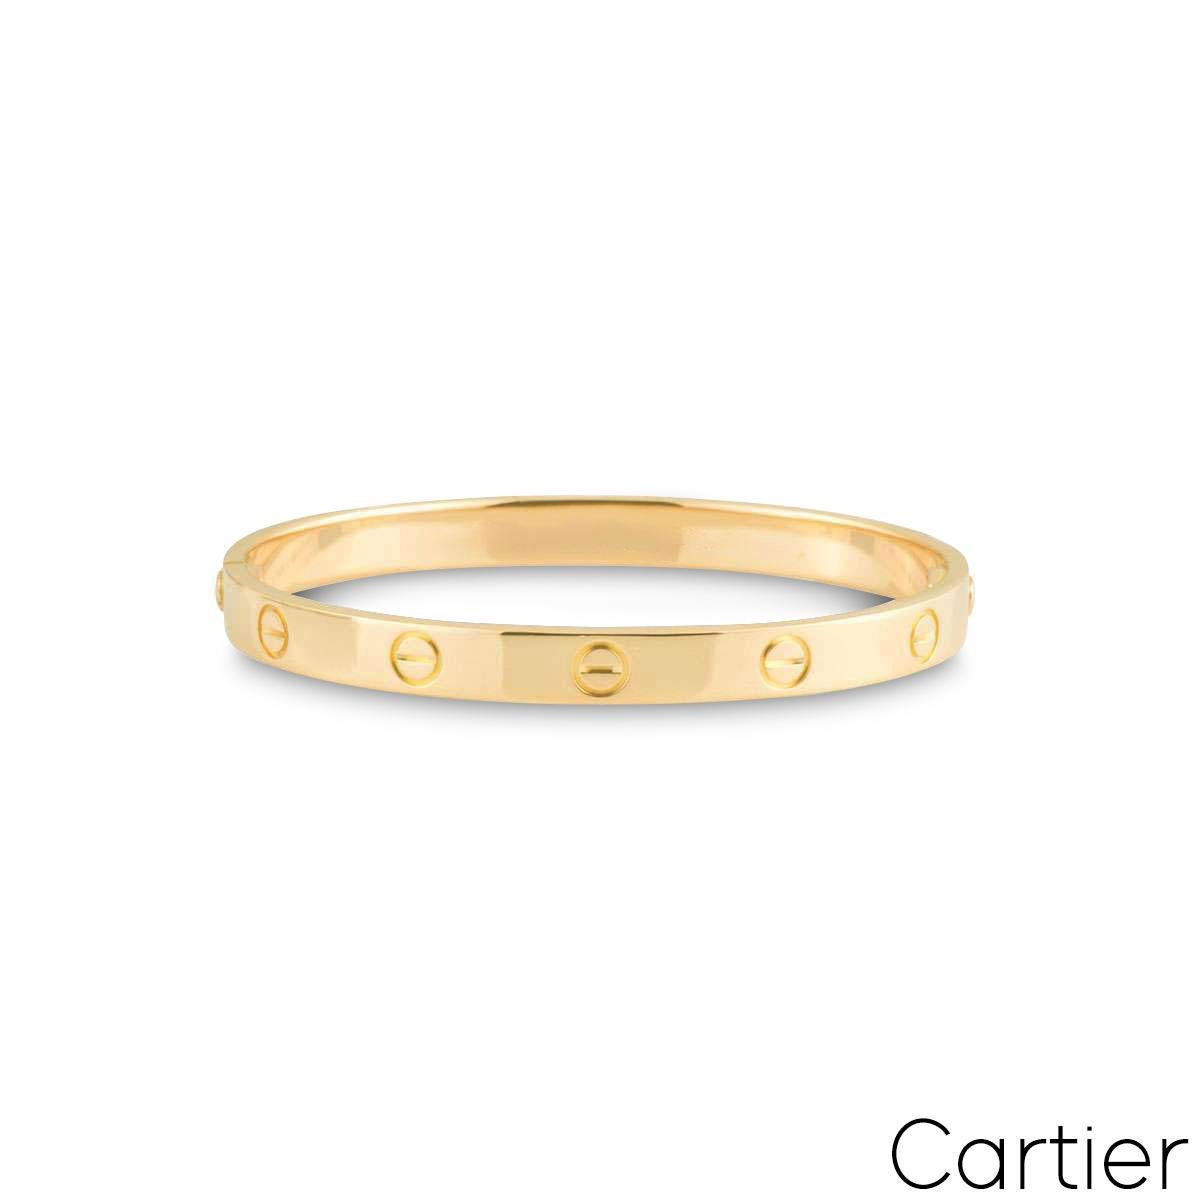 Un bracciale firmato Cartier in oro giallo 18 carati della collezione Love. Il bracciale presenta l'iconico motivo a vite sul bordo esterno ed è dotato di un nuovo stile di chiusura a vite. Questo bracciale ha un peso lordo di 37,6 grammi ed è una